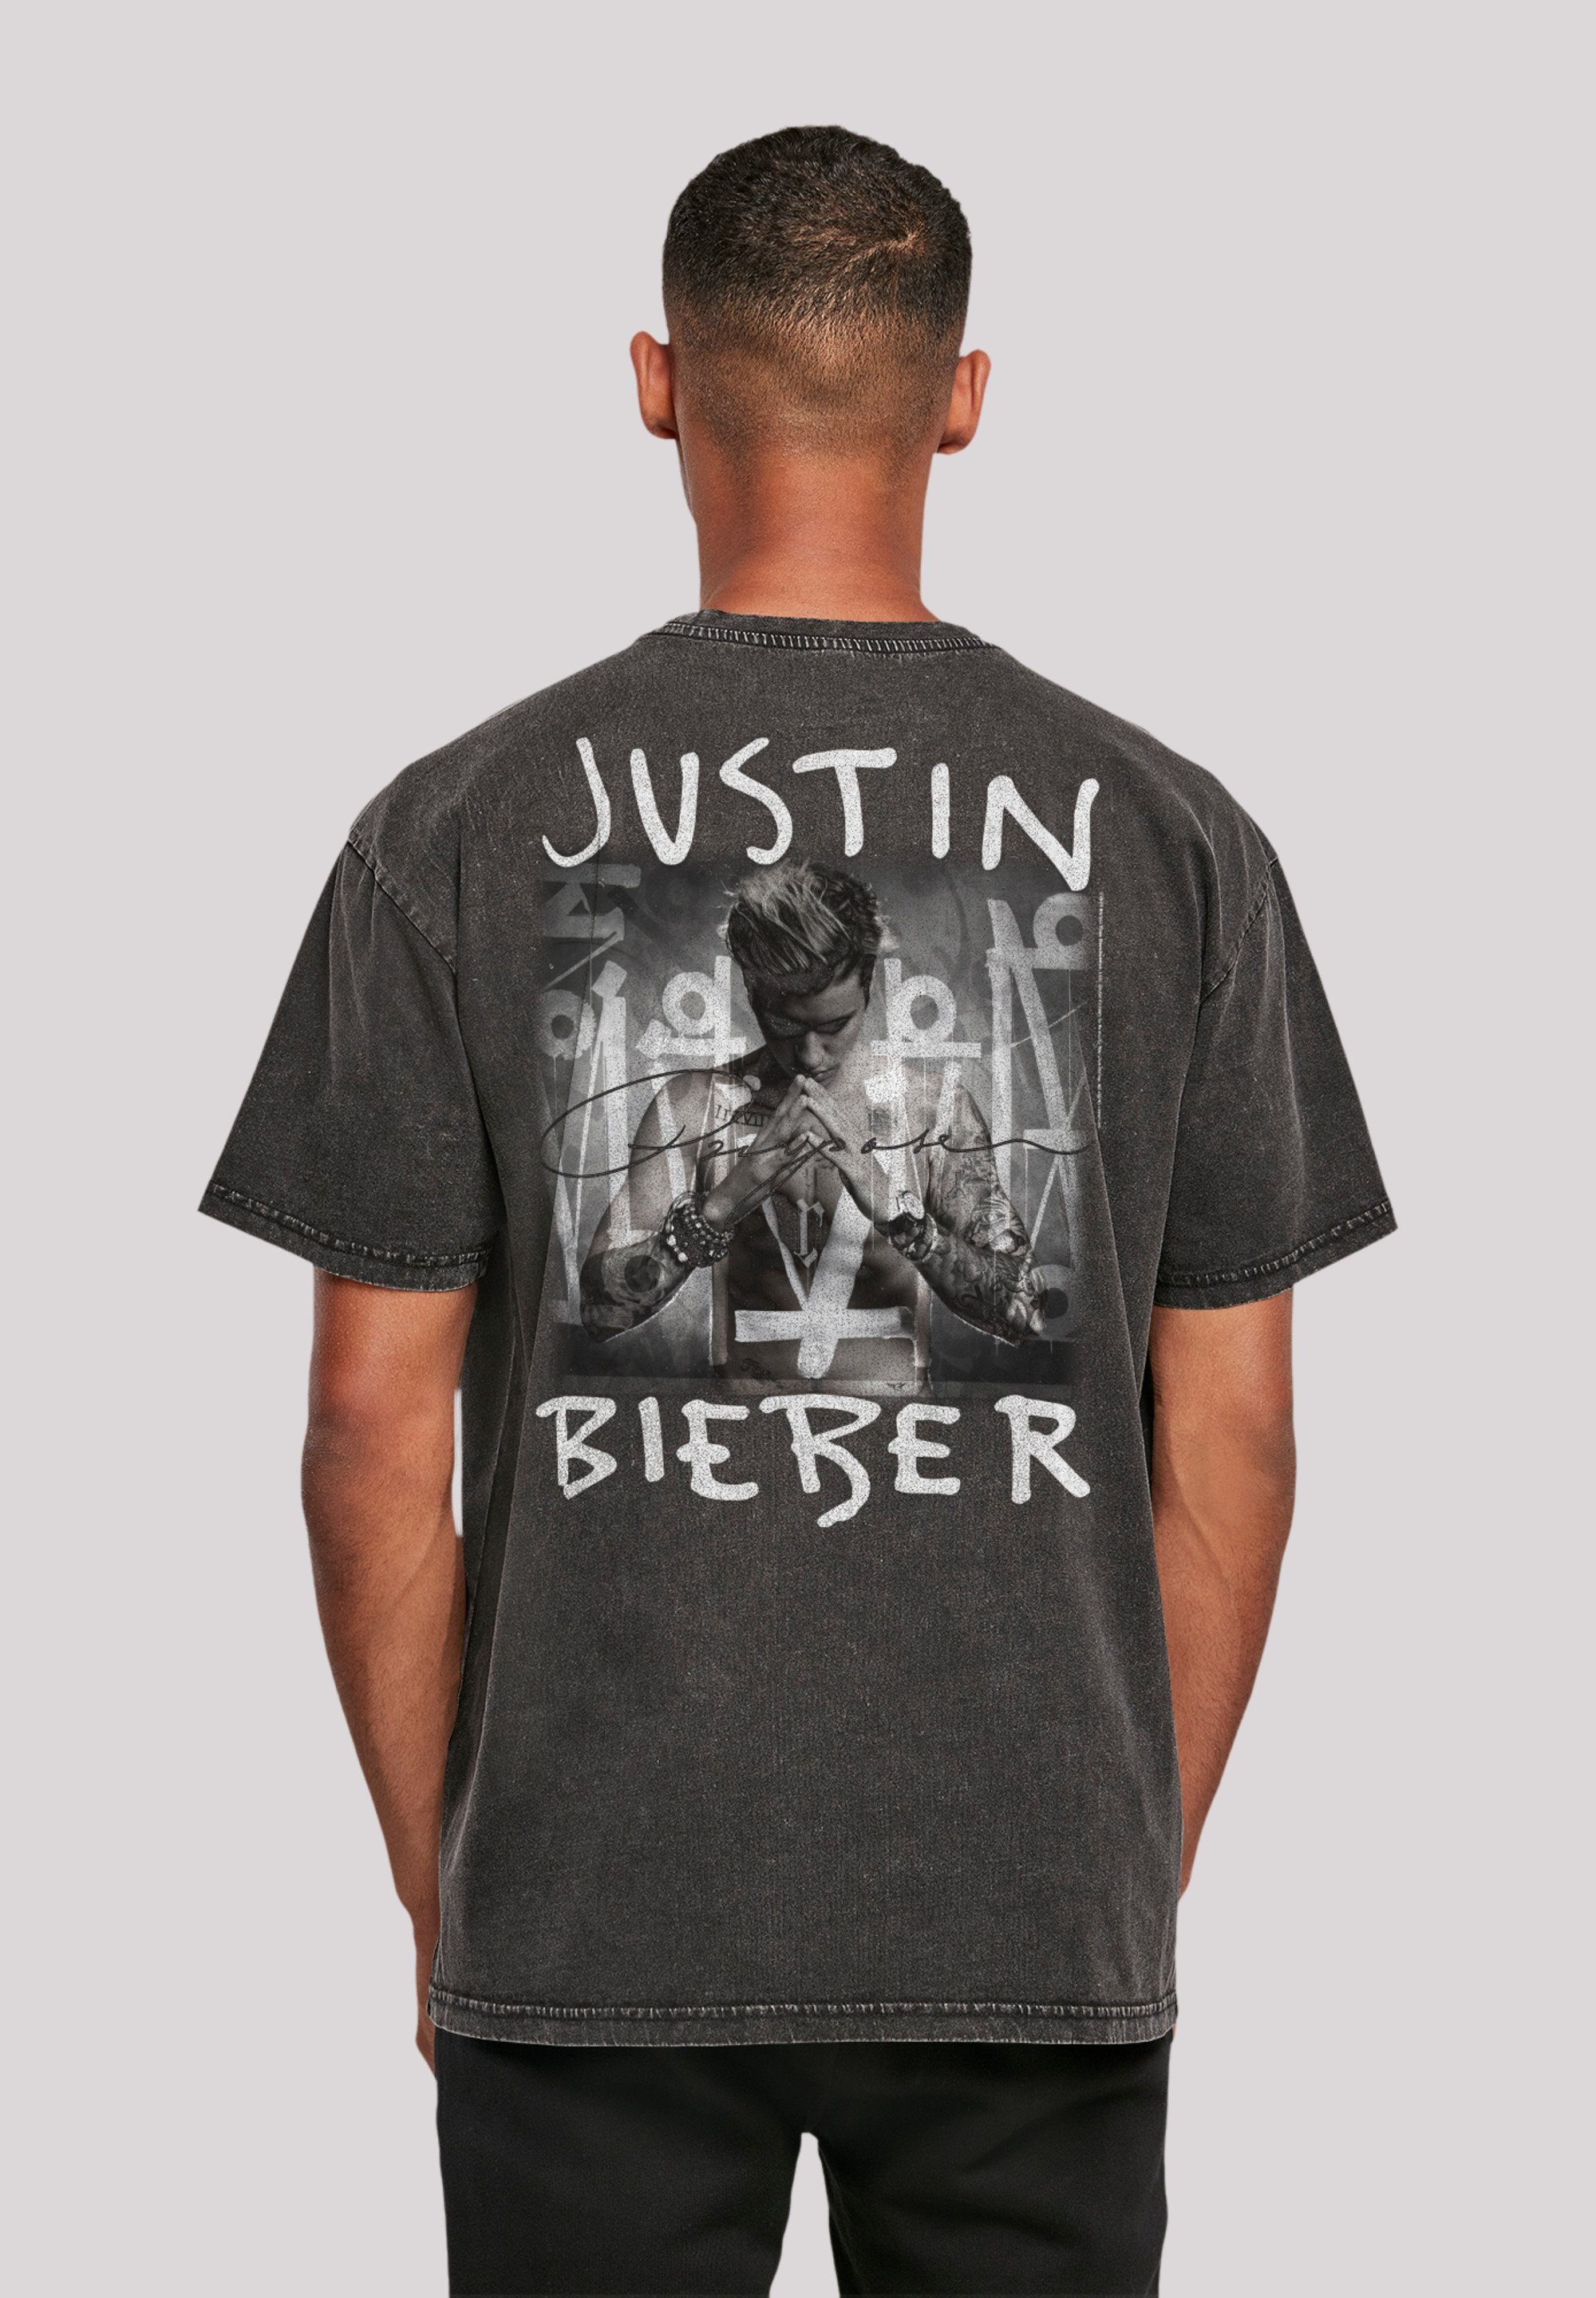 Rock Cover Purpose Off, Justin Album T-Shirt Bieber Qualität, Hochwertige Musik, F4NT4STIC Premium By Baumwollqualität